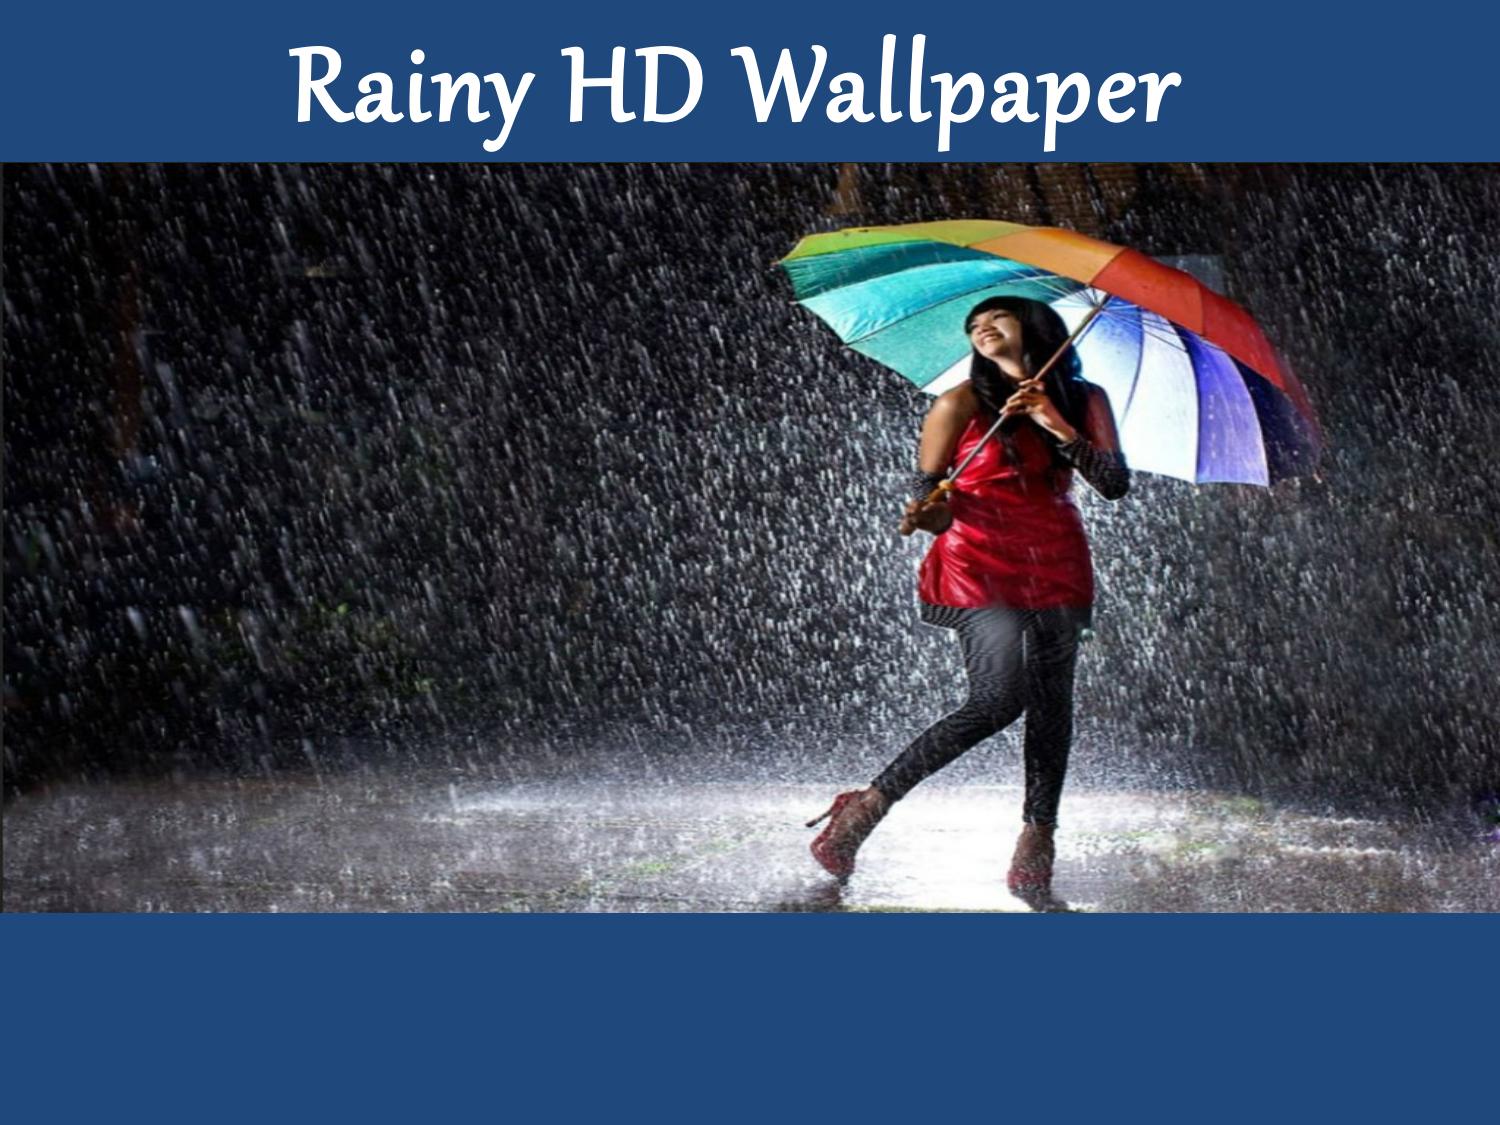 Rainy Season Images Hd - HD Wallpaper 